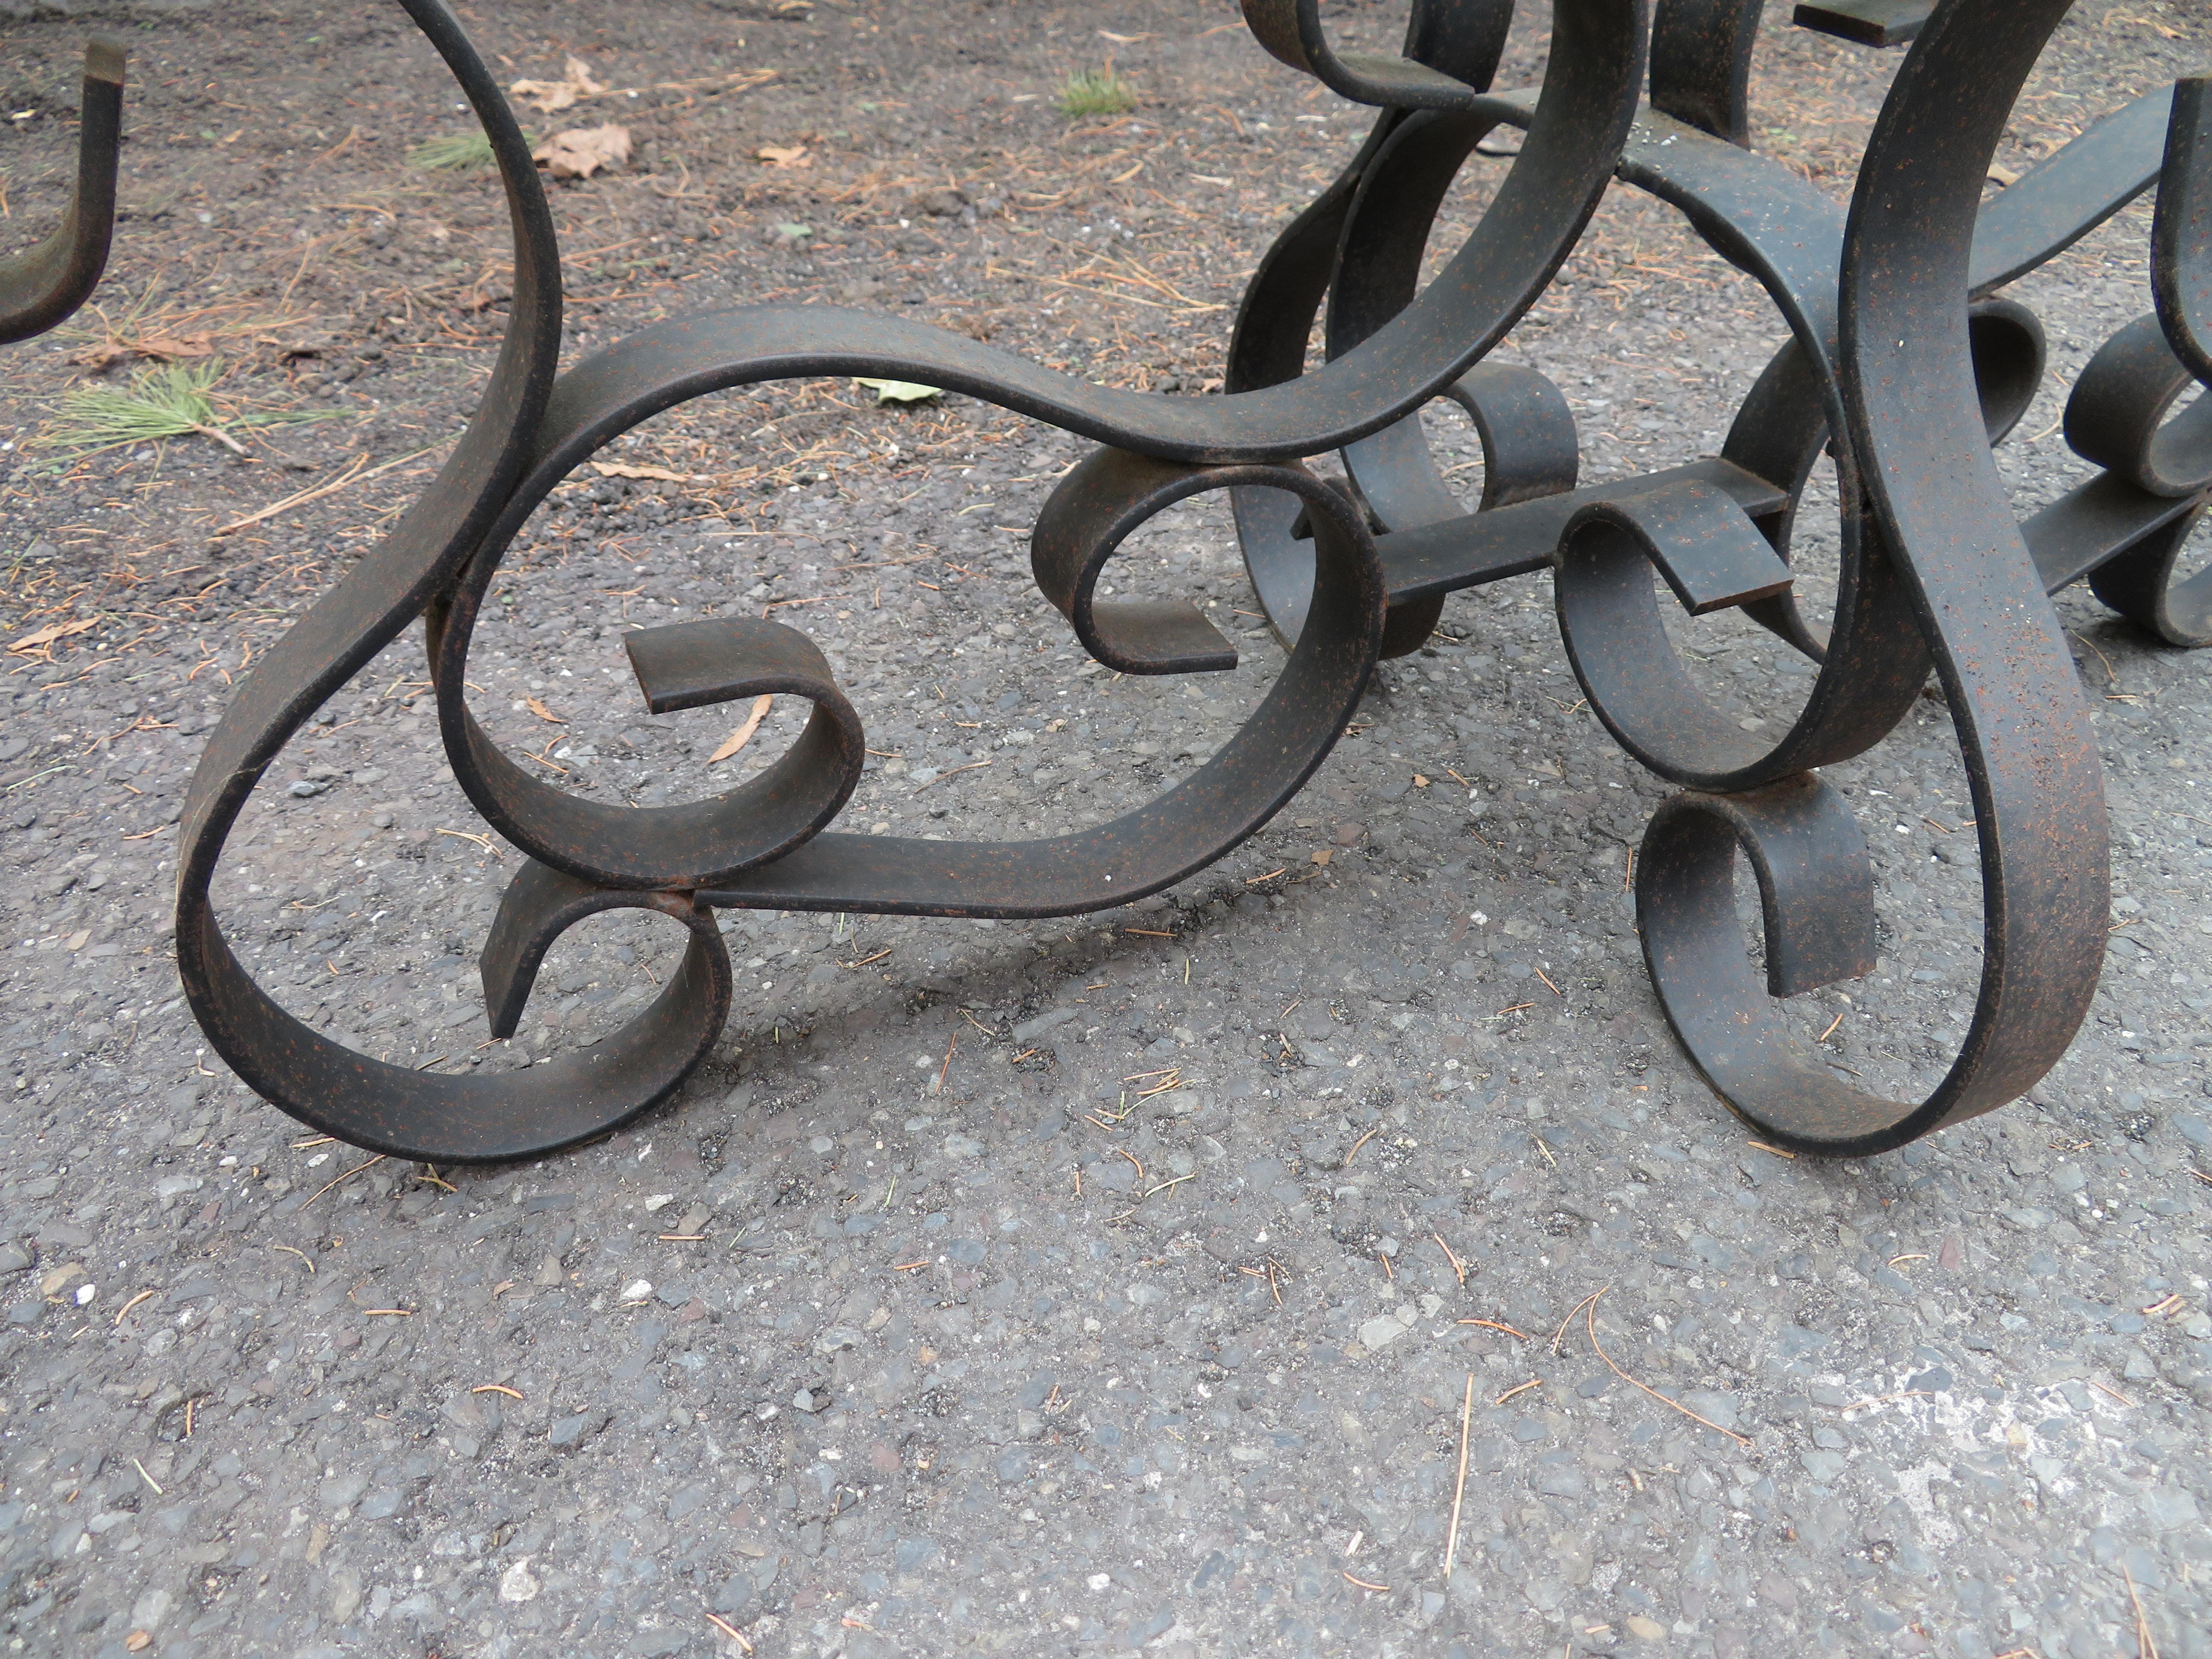 Merveilleuse table basse oblongue en fer forgé de style Hollywood Regency. Cette table a beaucoup d'attrait vintage avec sa base en fer forgé à volutes lourdes et son plateau en verre à bords festonnés.